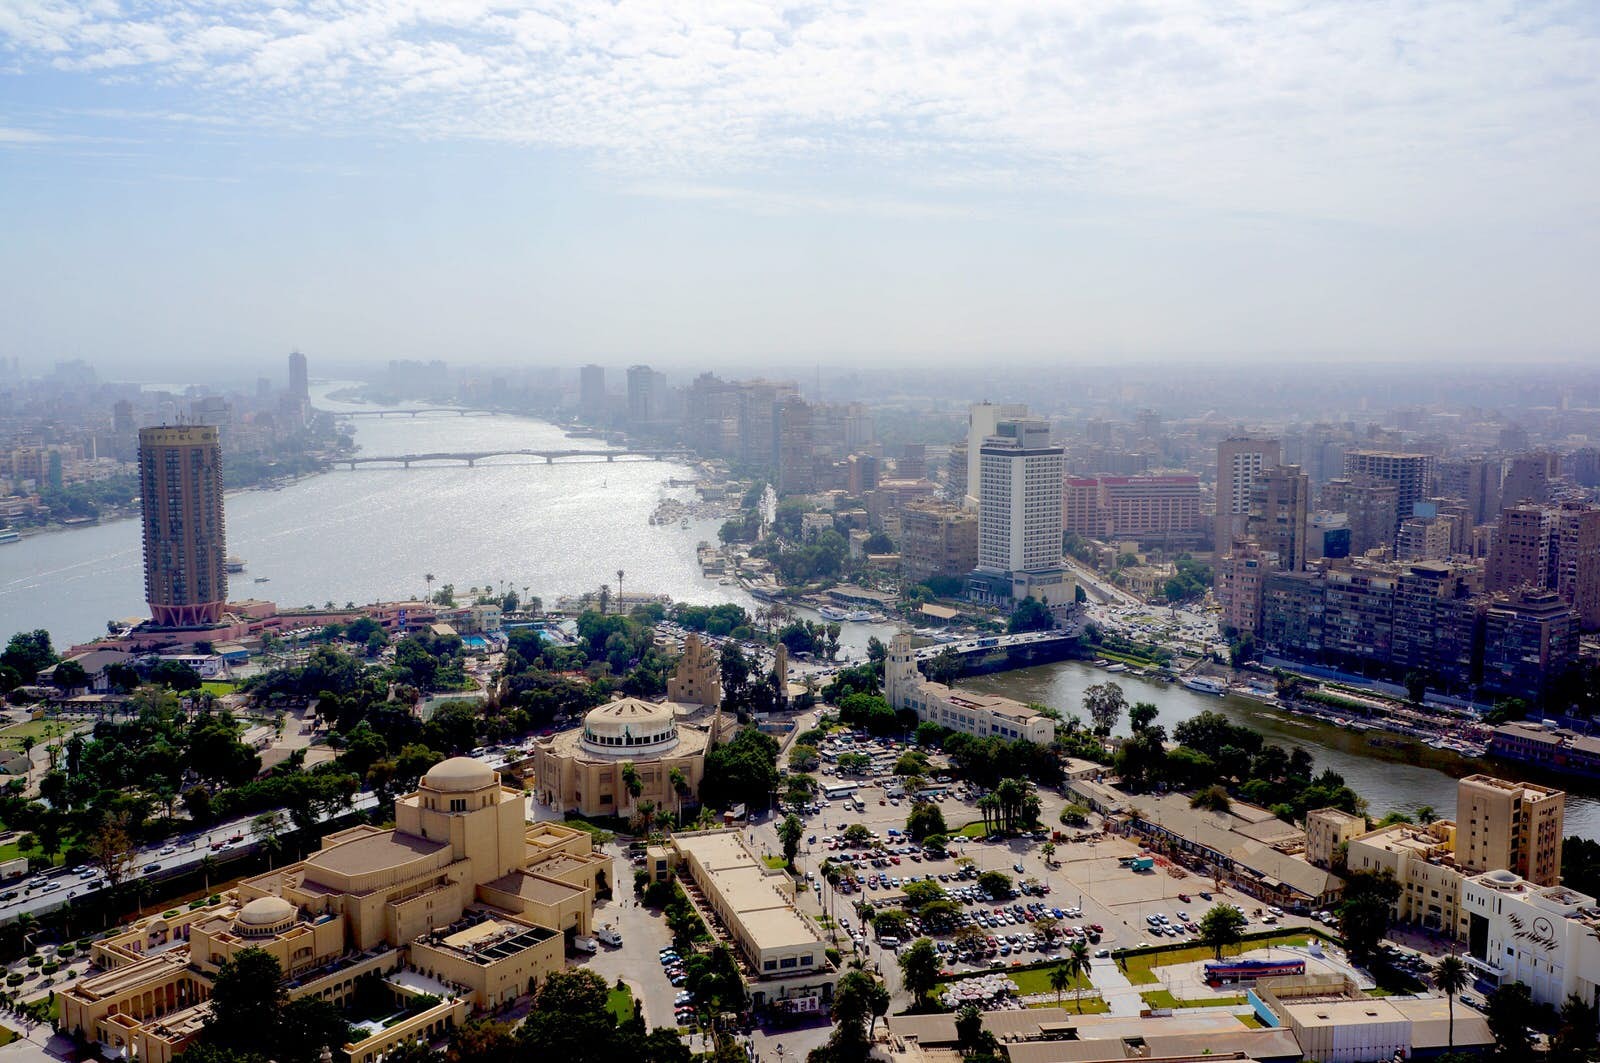 I migliori hotspot di Instagram al Cairo 